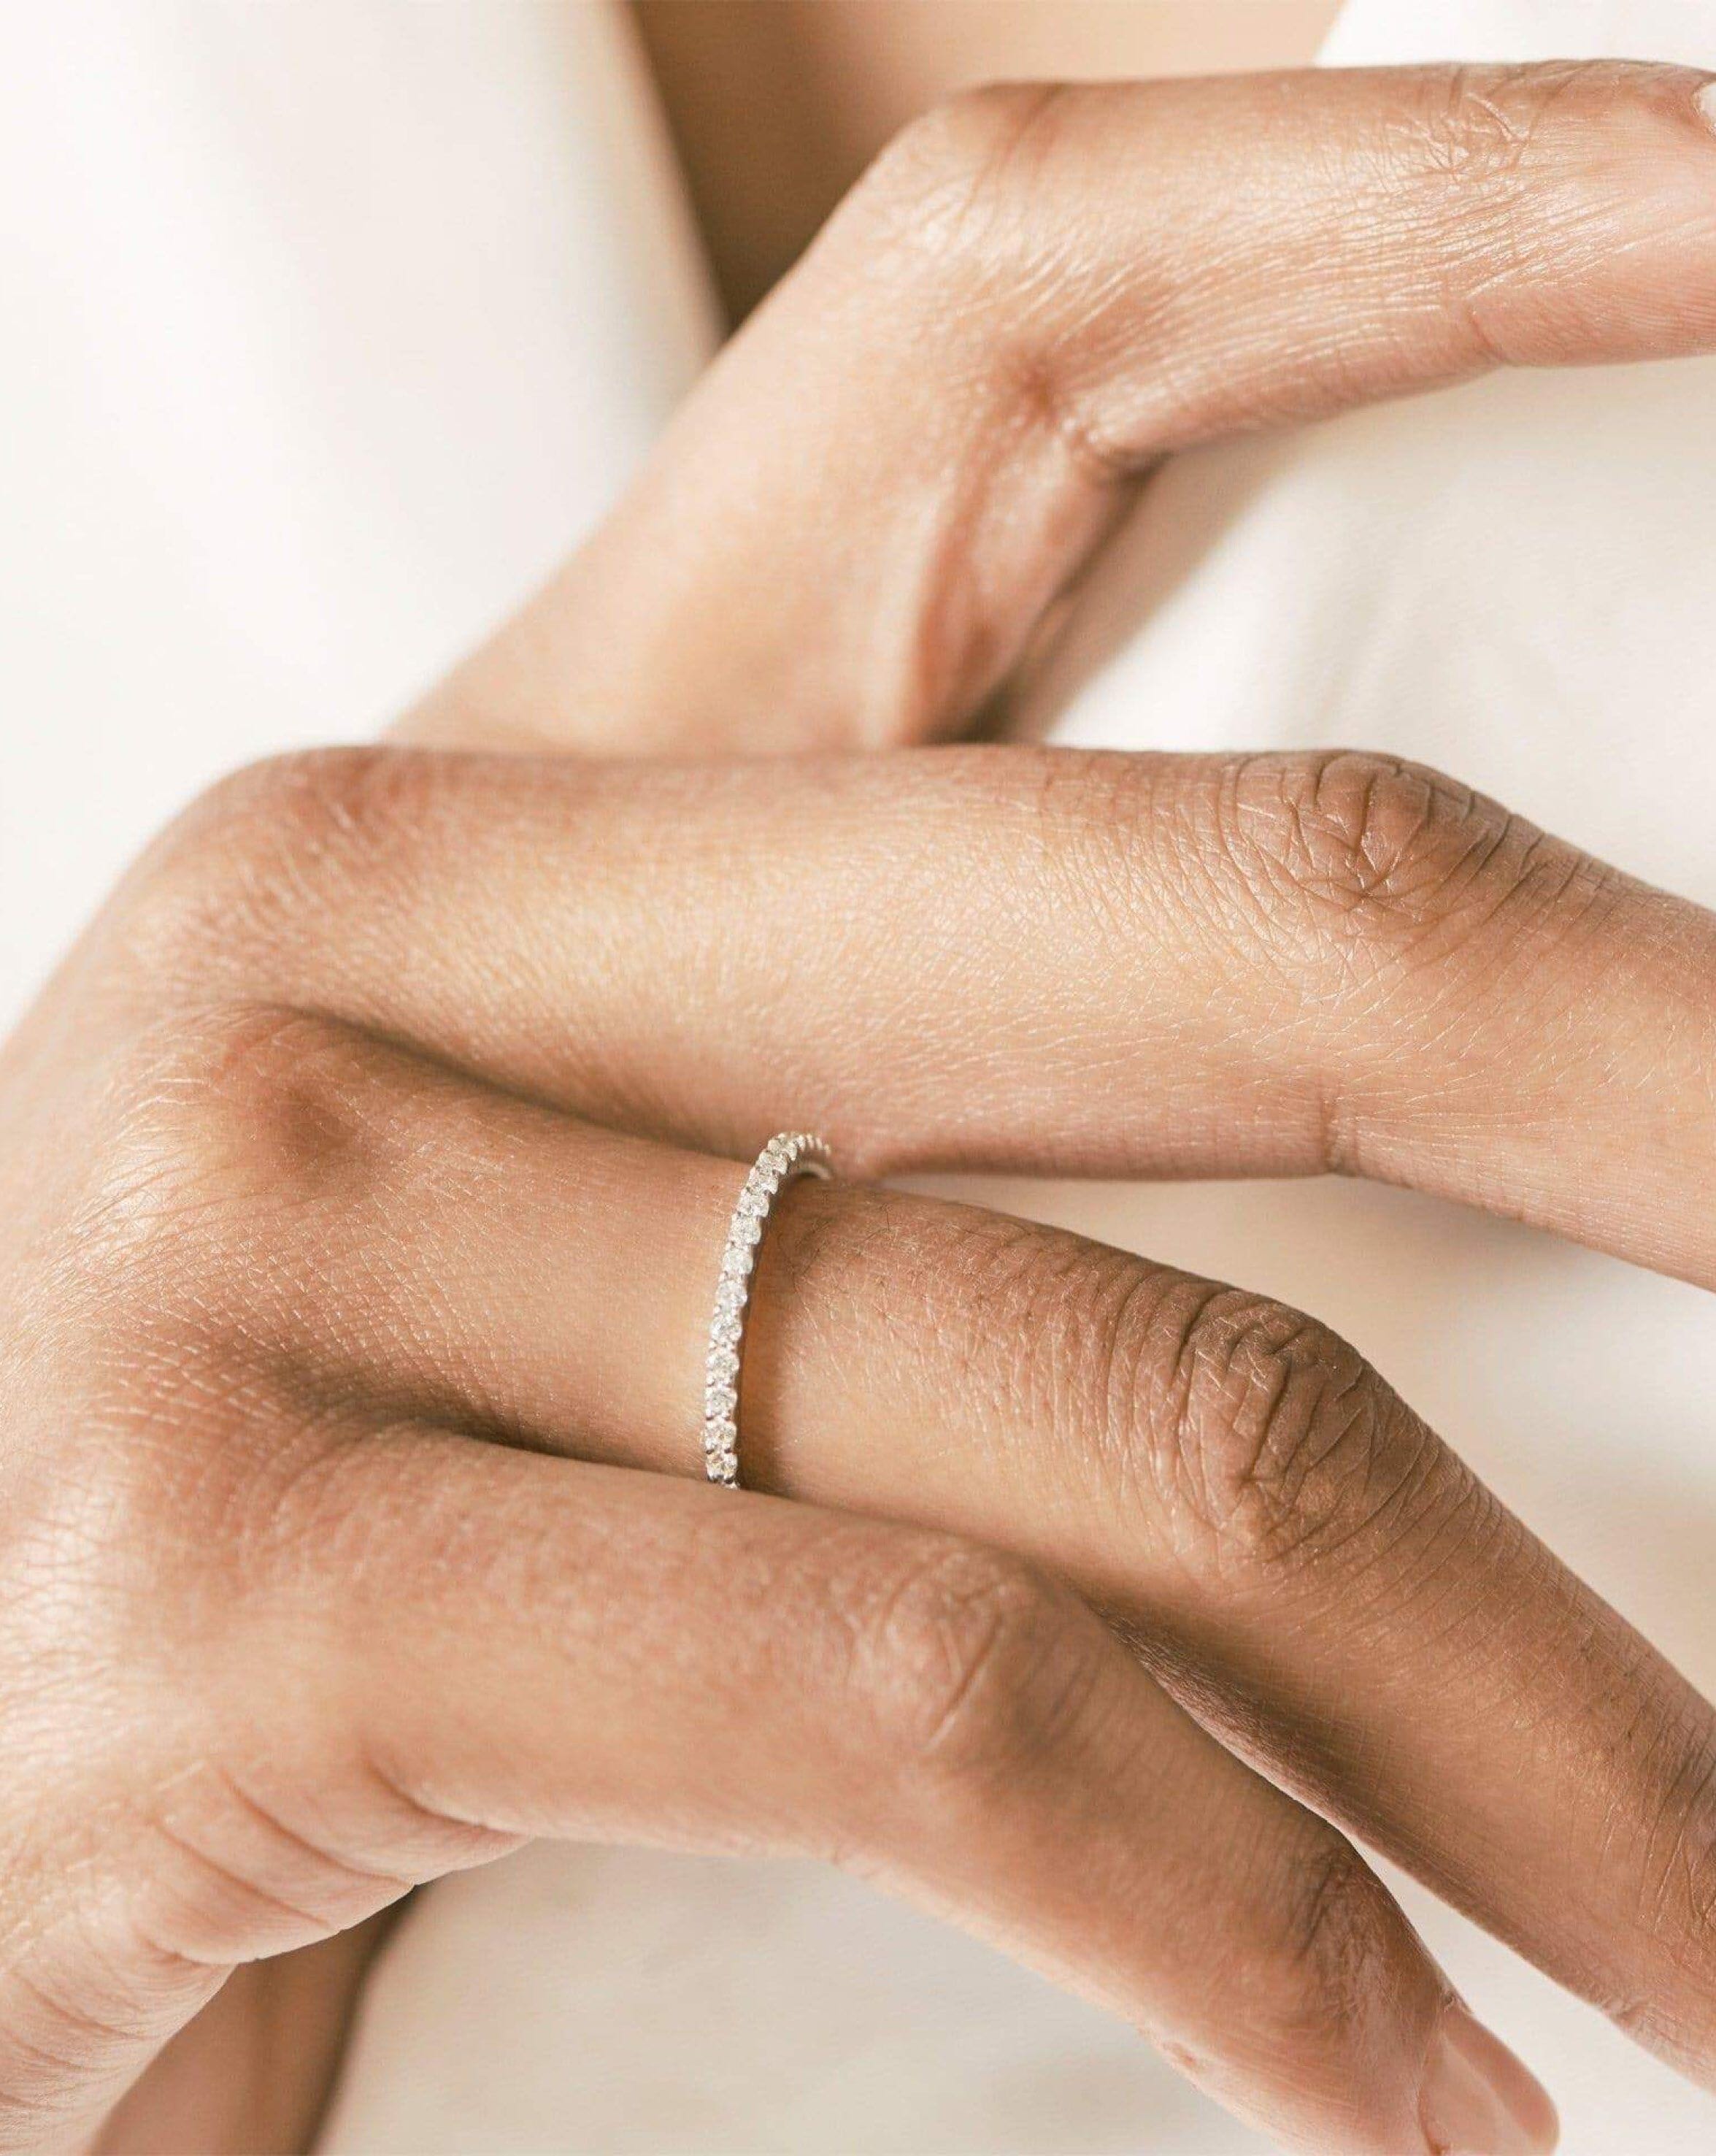 Fine Slim Half Eternity Ring | 14k White Gold/Diamond Rings Missoma 